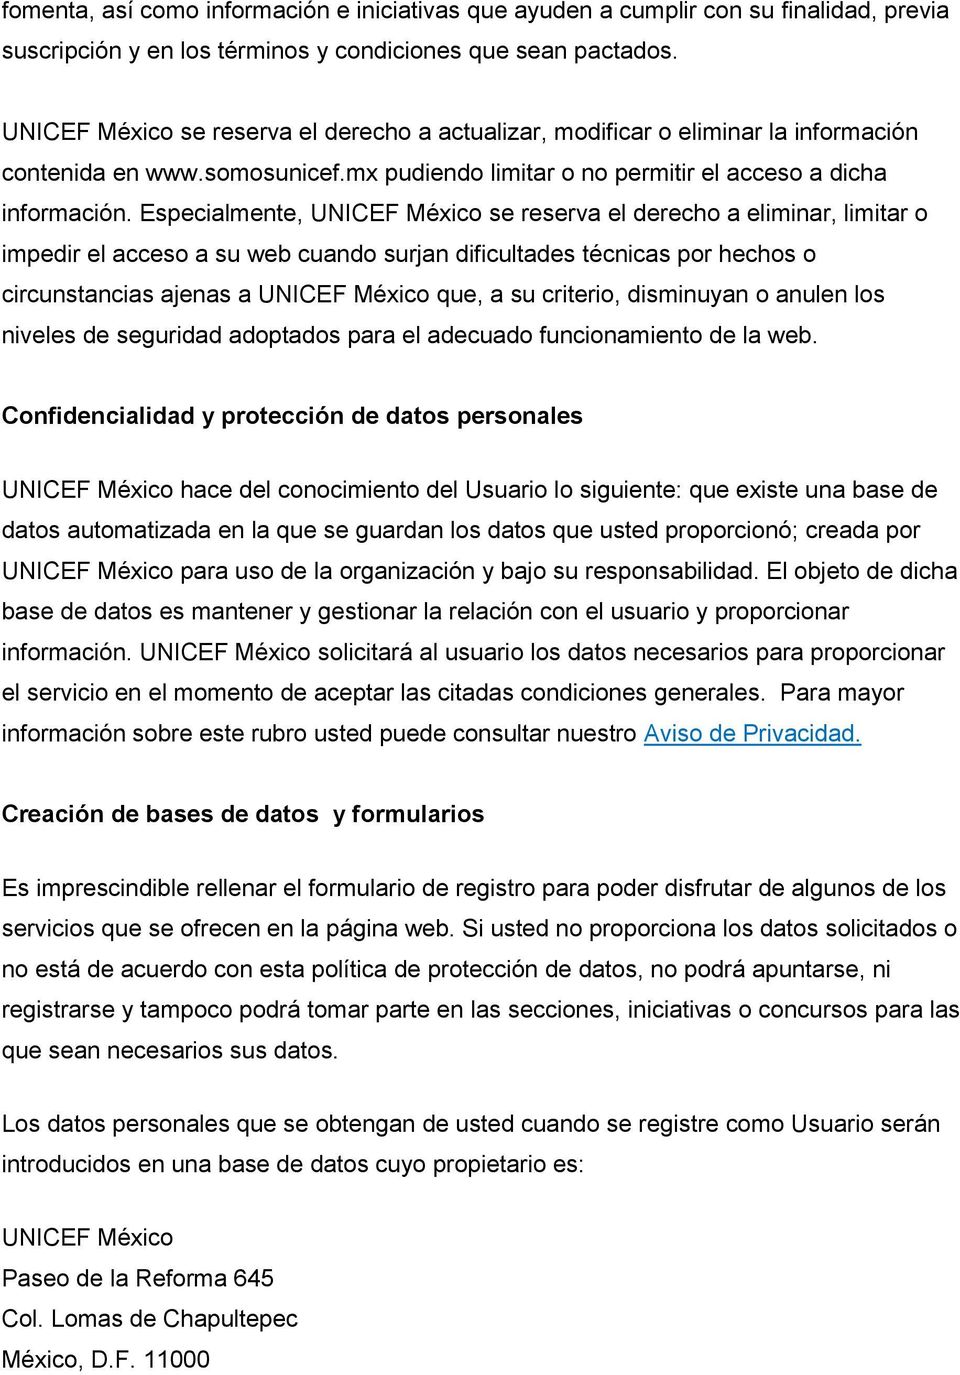 Especialmente, UNICEF México se reserva el derecho a eliminar, limitar o impedir el acceso a su web cuando surjan dificultades técnicas por hechos o circunstancias ajenas a UNICEF México que, a su